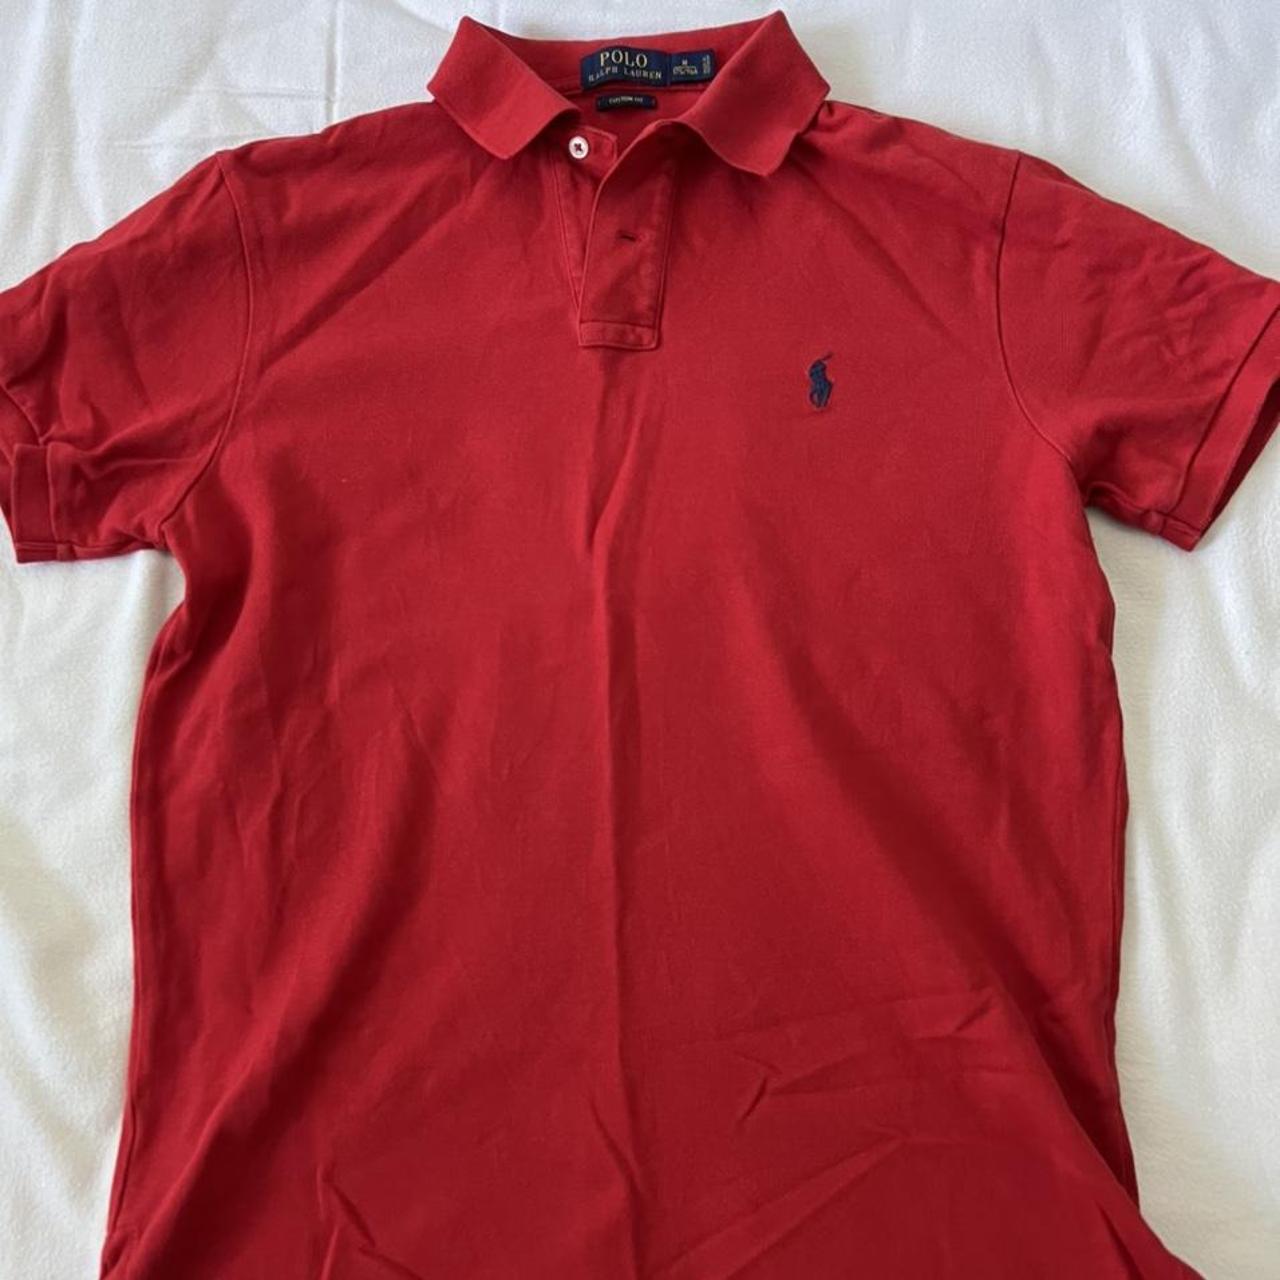 Ralph Lauren polo shirt size medium - Depop